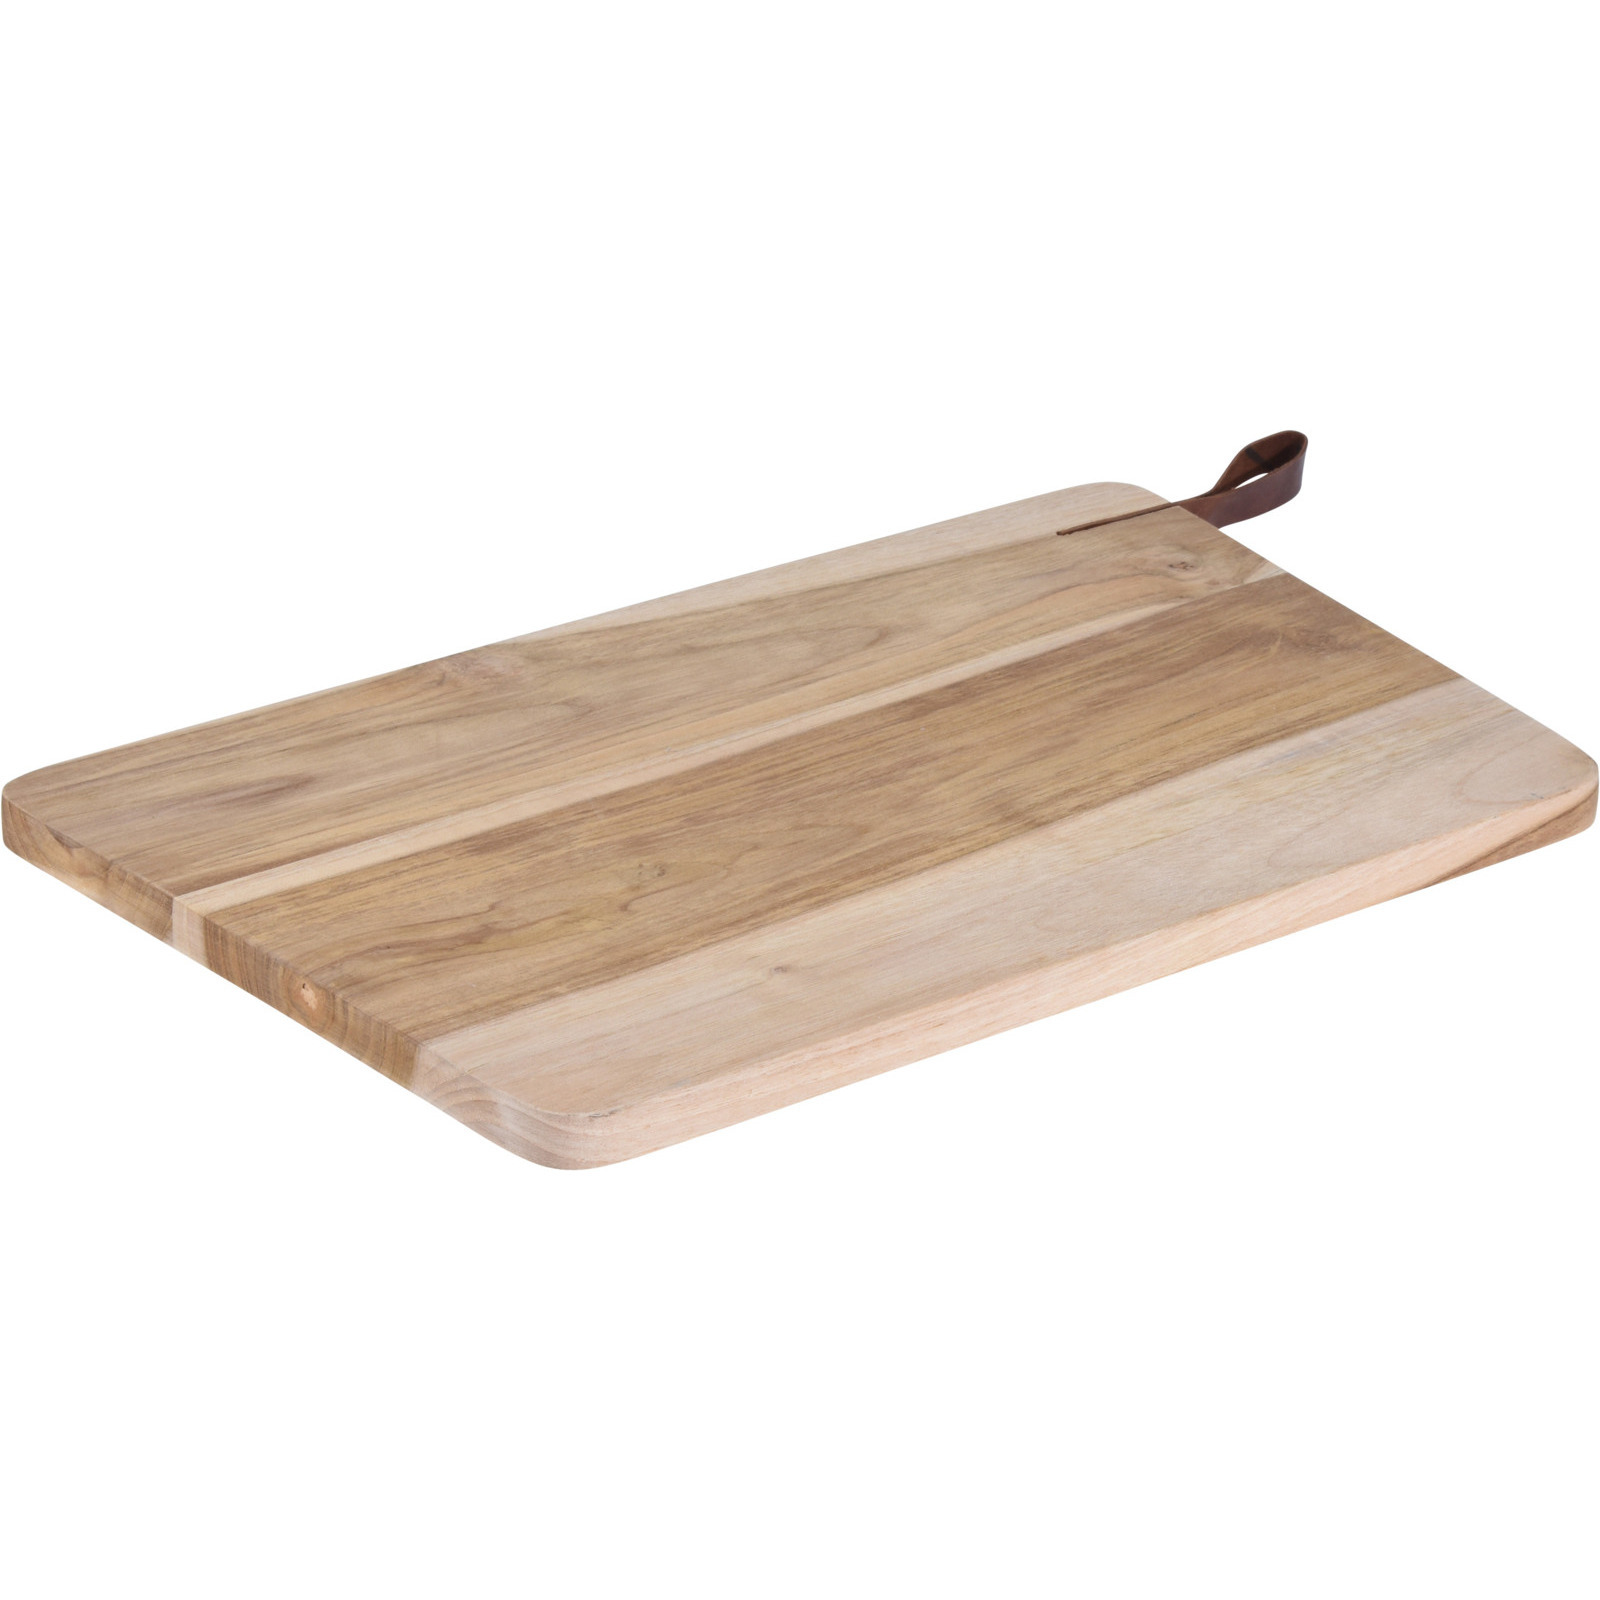 Houten snijplank-serveerplank met leren hengsel 40 cm